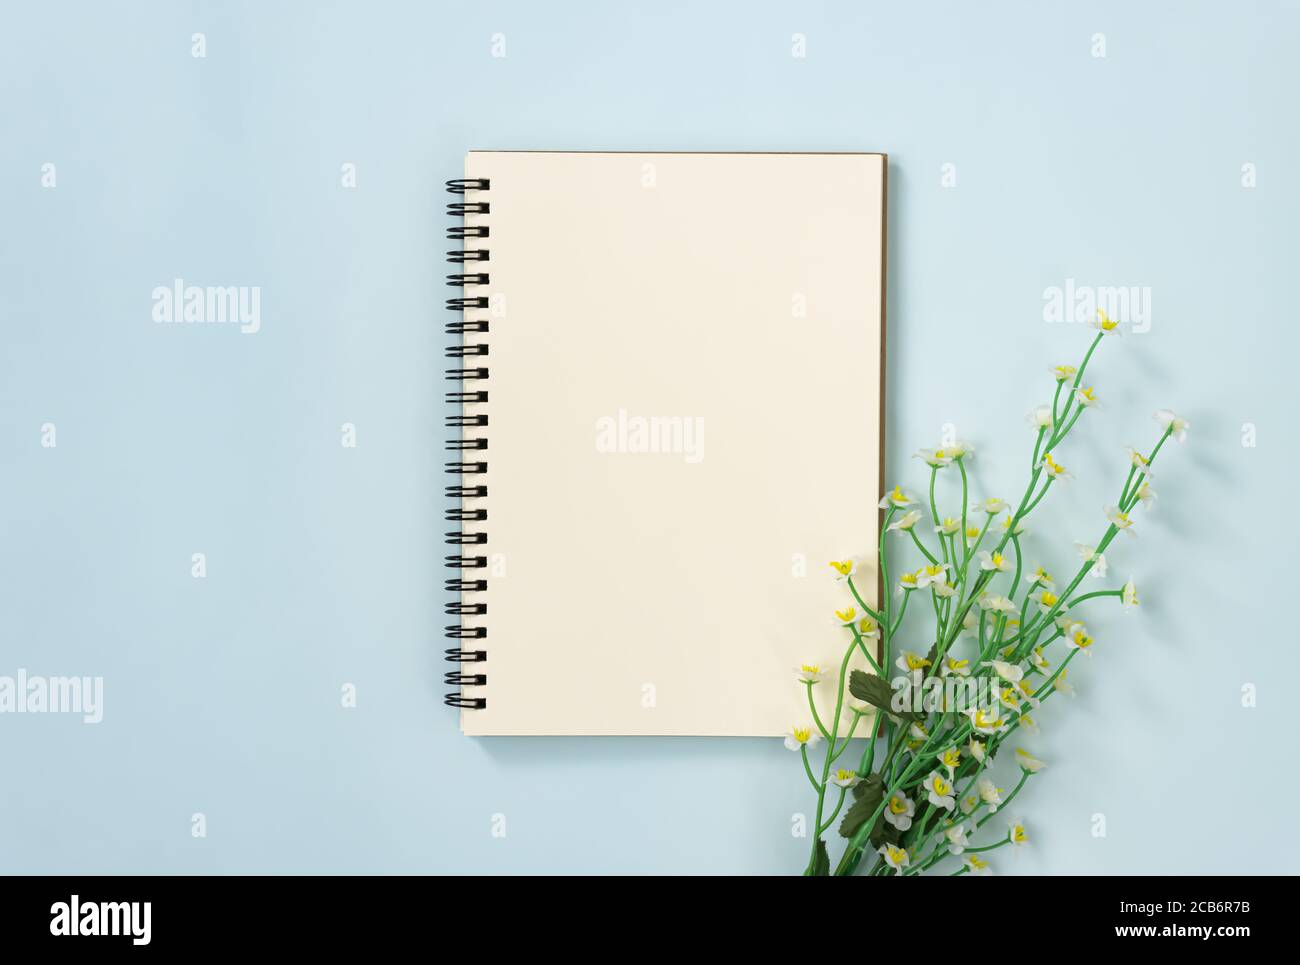 Spiral Notizbuch oder Spring Notizbuch in Unlined Type und White Gänseblümchen Blumen unten rechts auf Blau Pastell minimalistischen Hintergrund Stockfoto